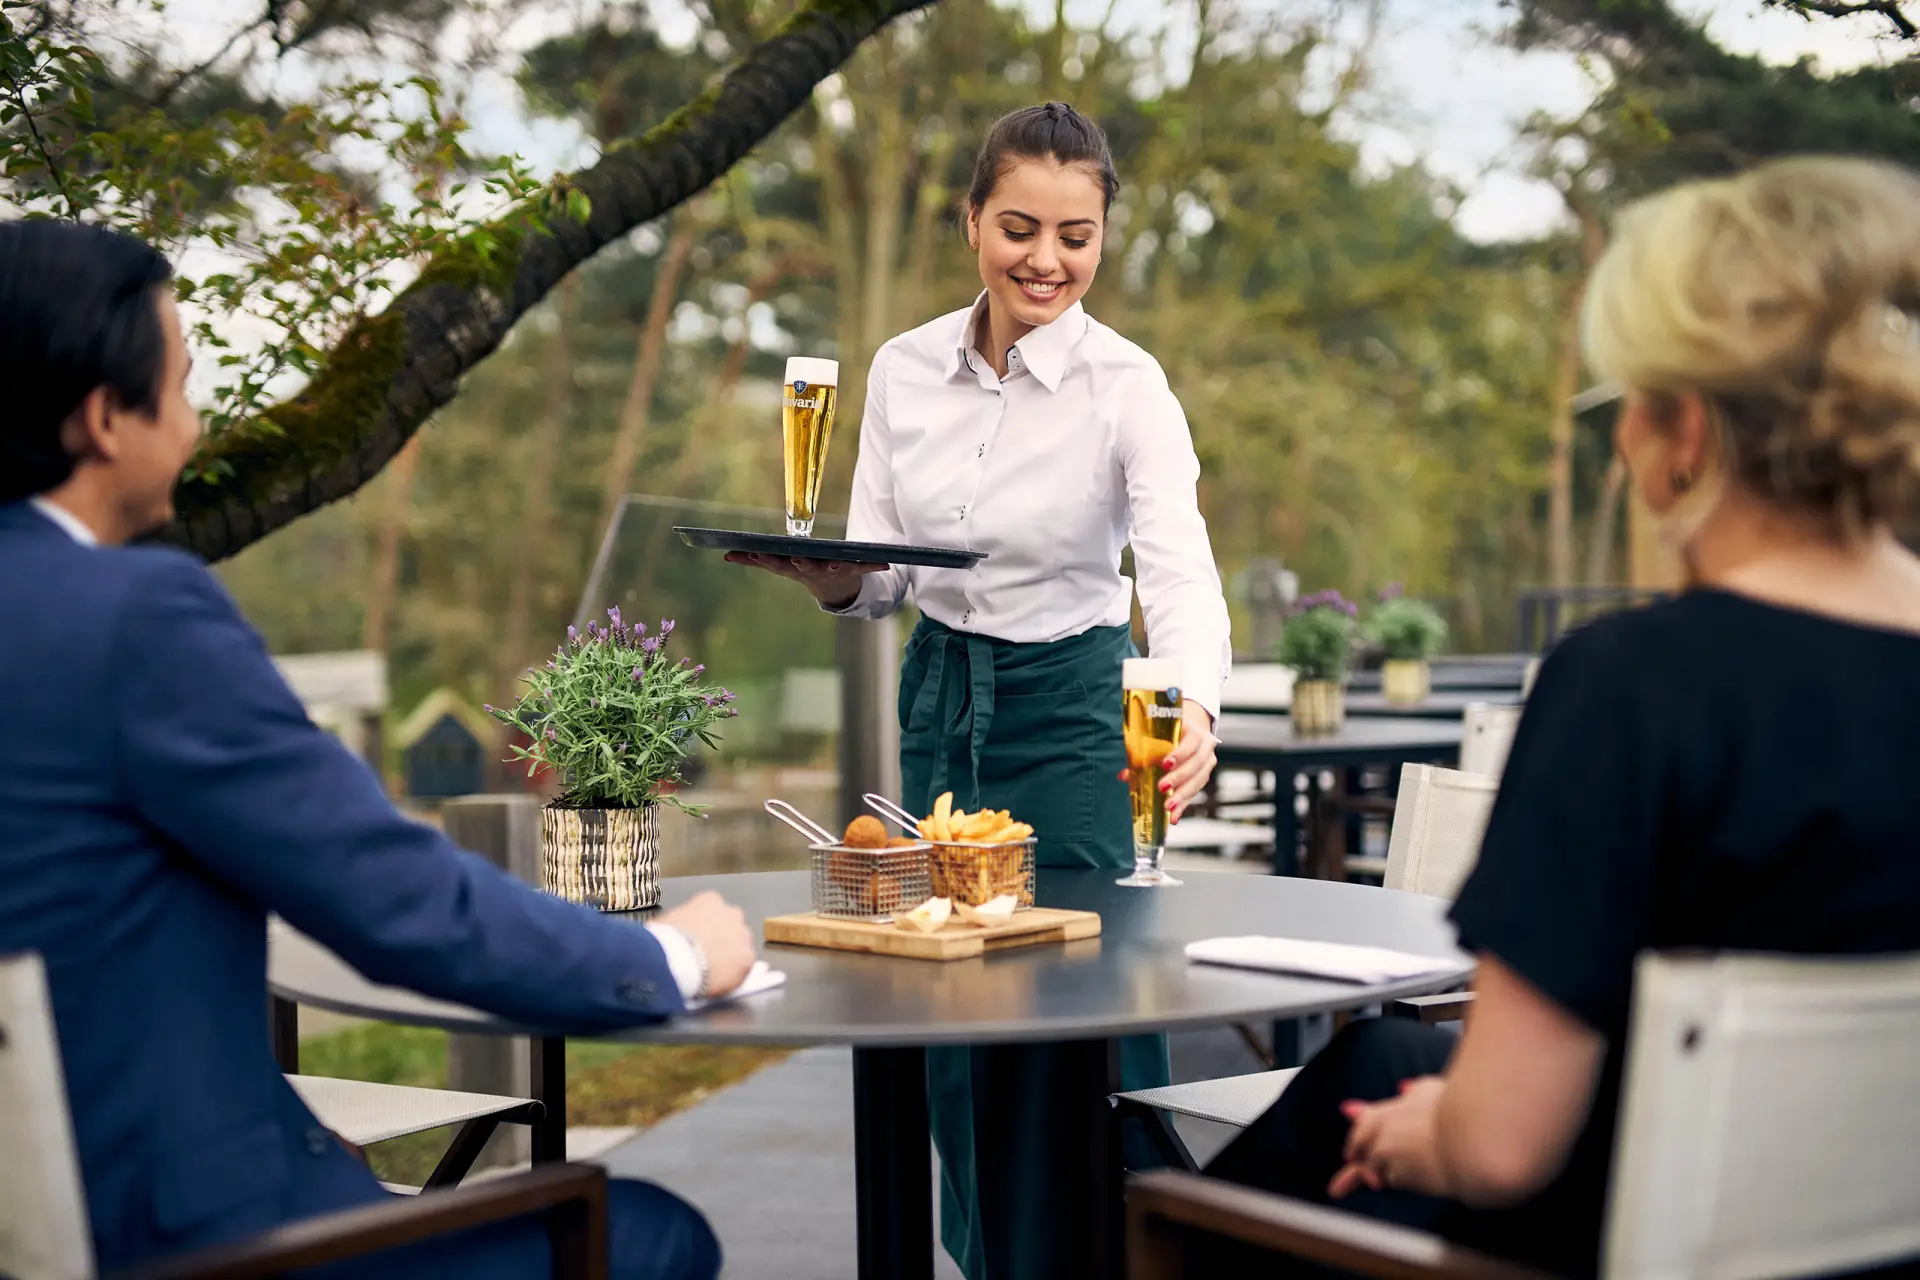 Serveerster zet een glas wijn neer buiten op een terras met een man en een vrouw